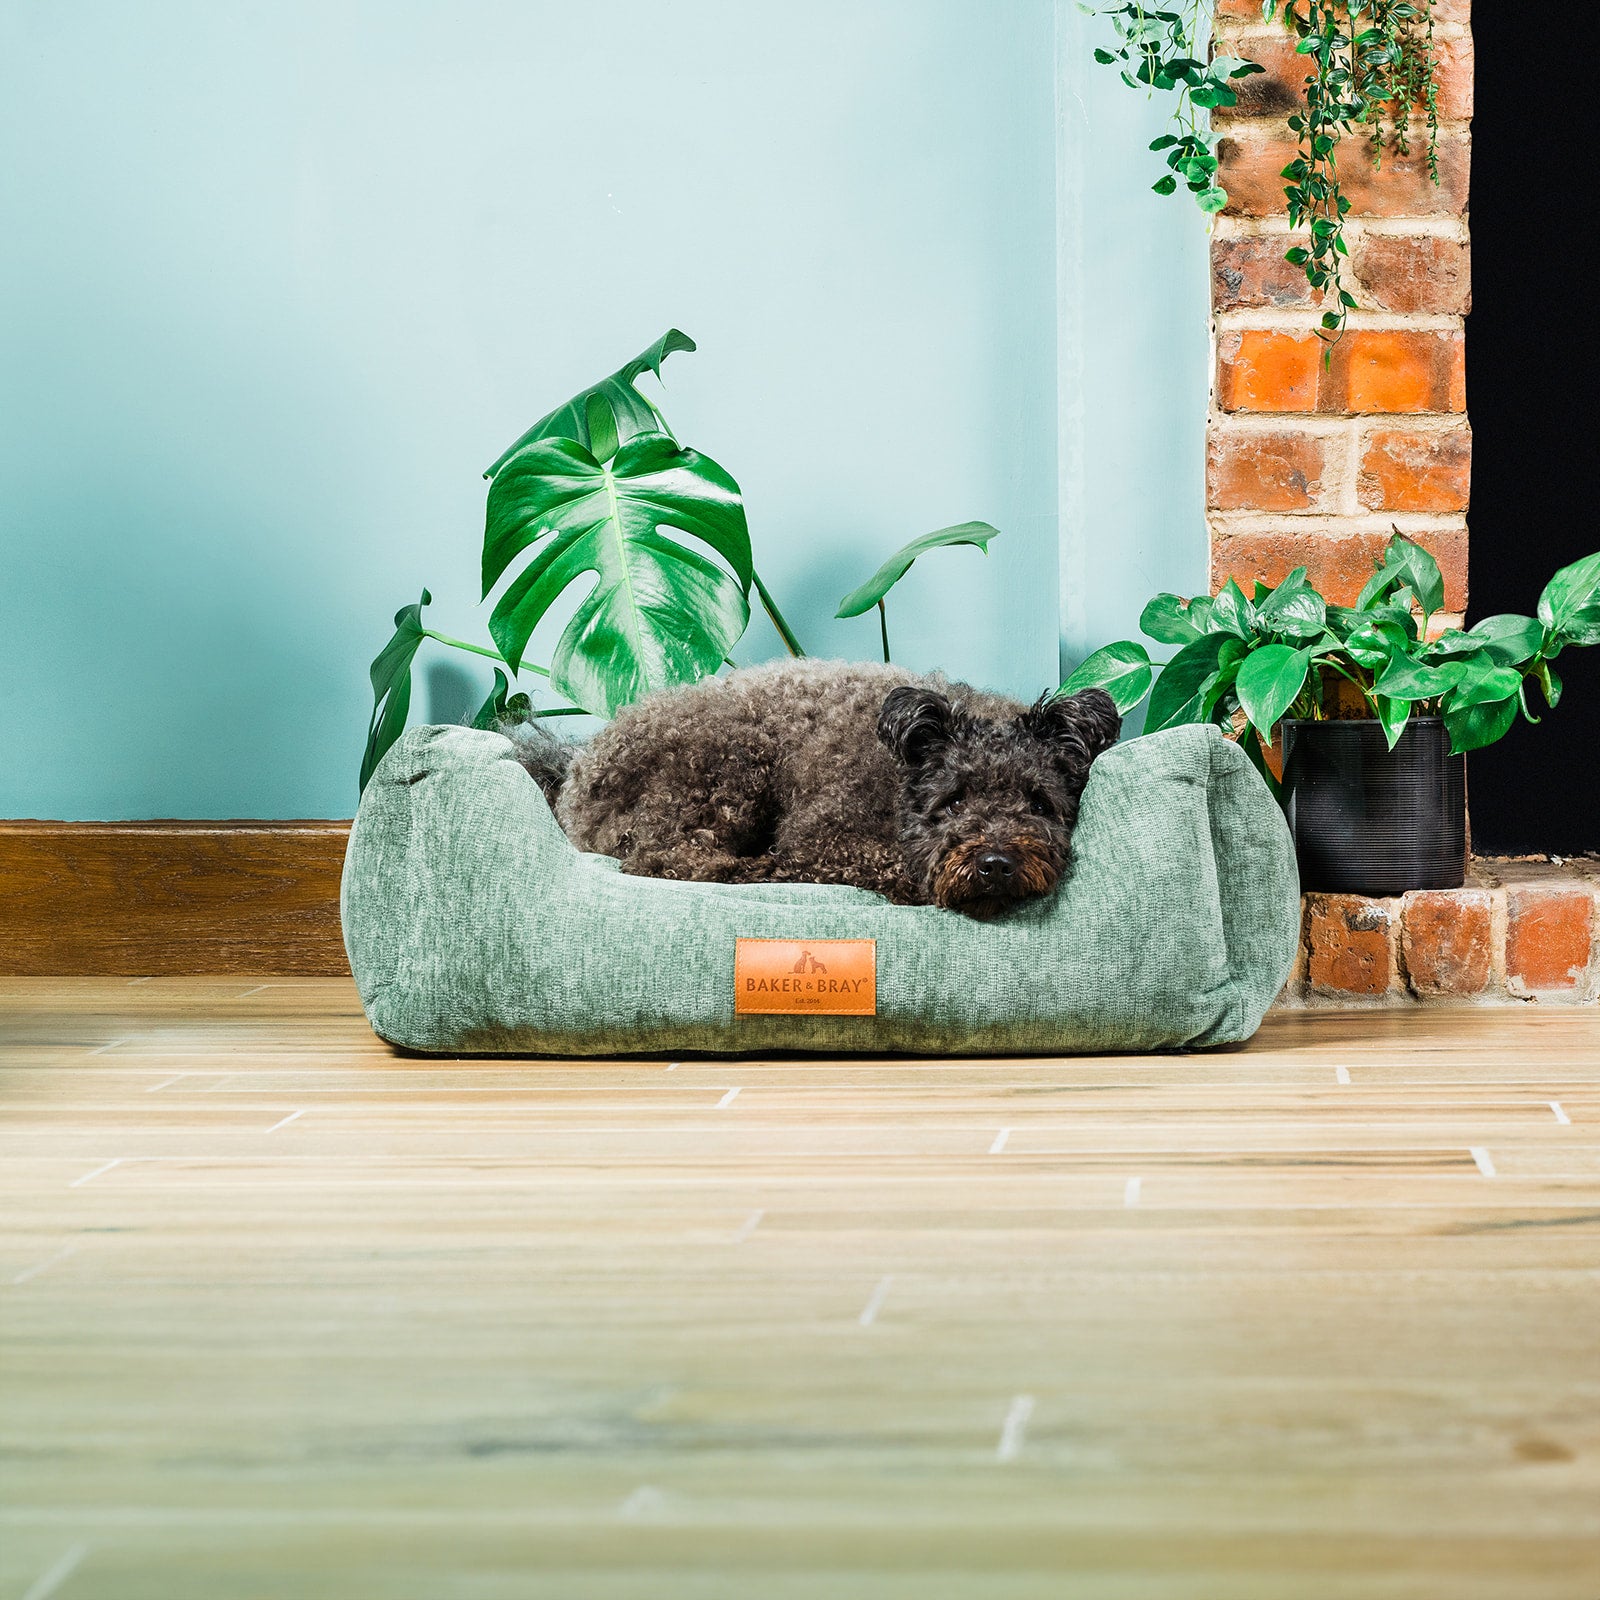 Eco Luxe Orthopaedic Luxury Dog Bed, Sage Green